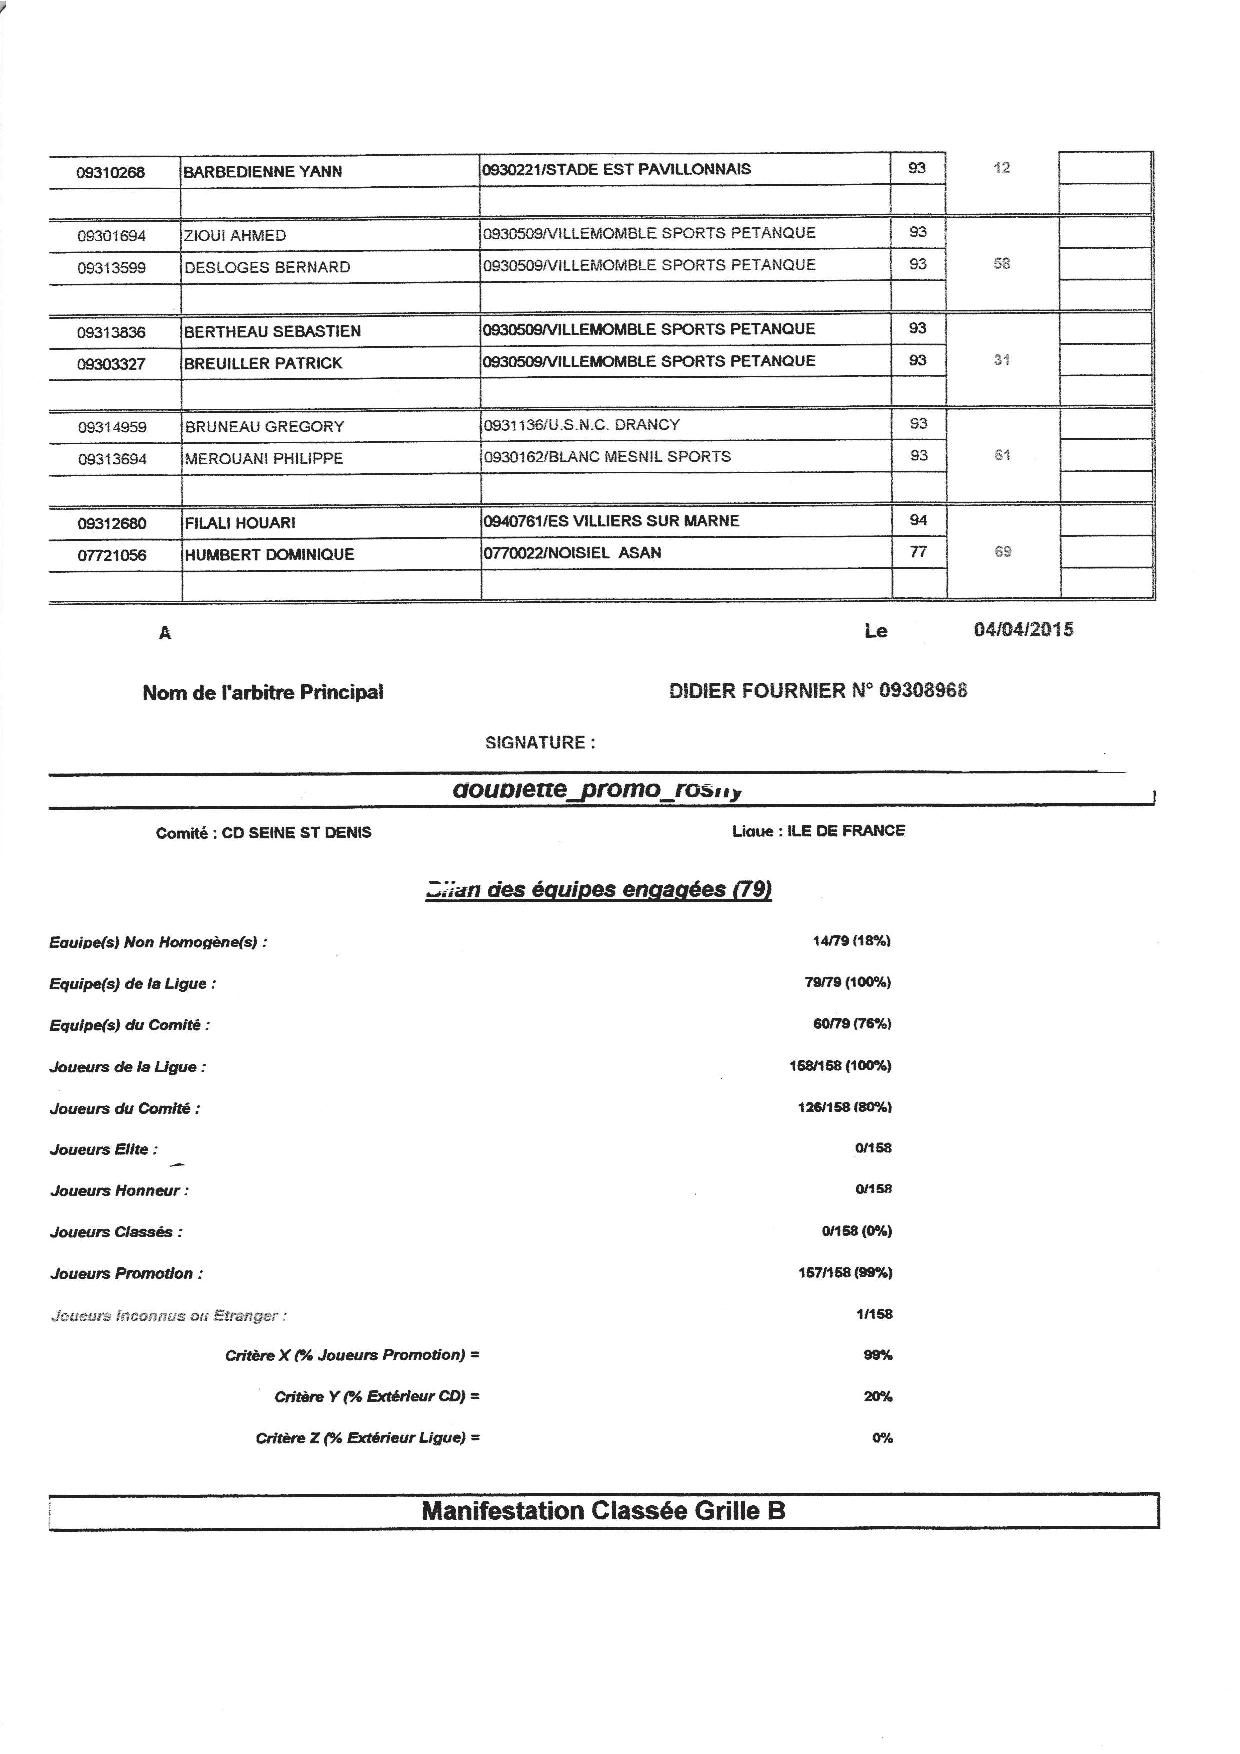 Résultats des Concours Boule Joyeuse Rosny 04.04.2015